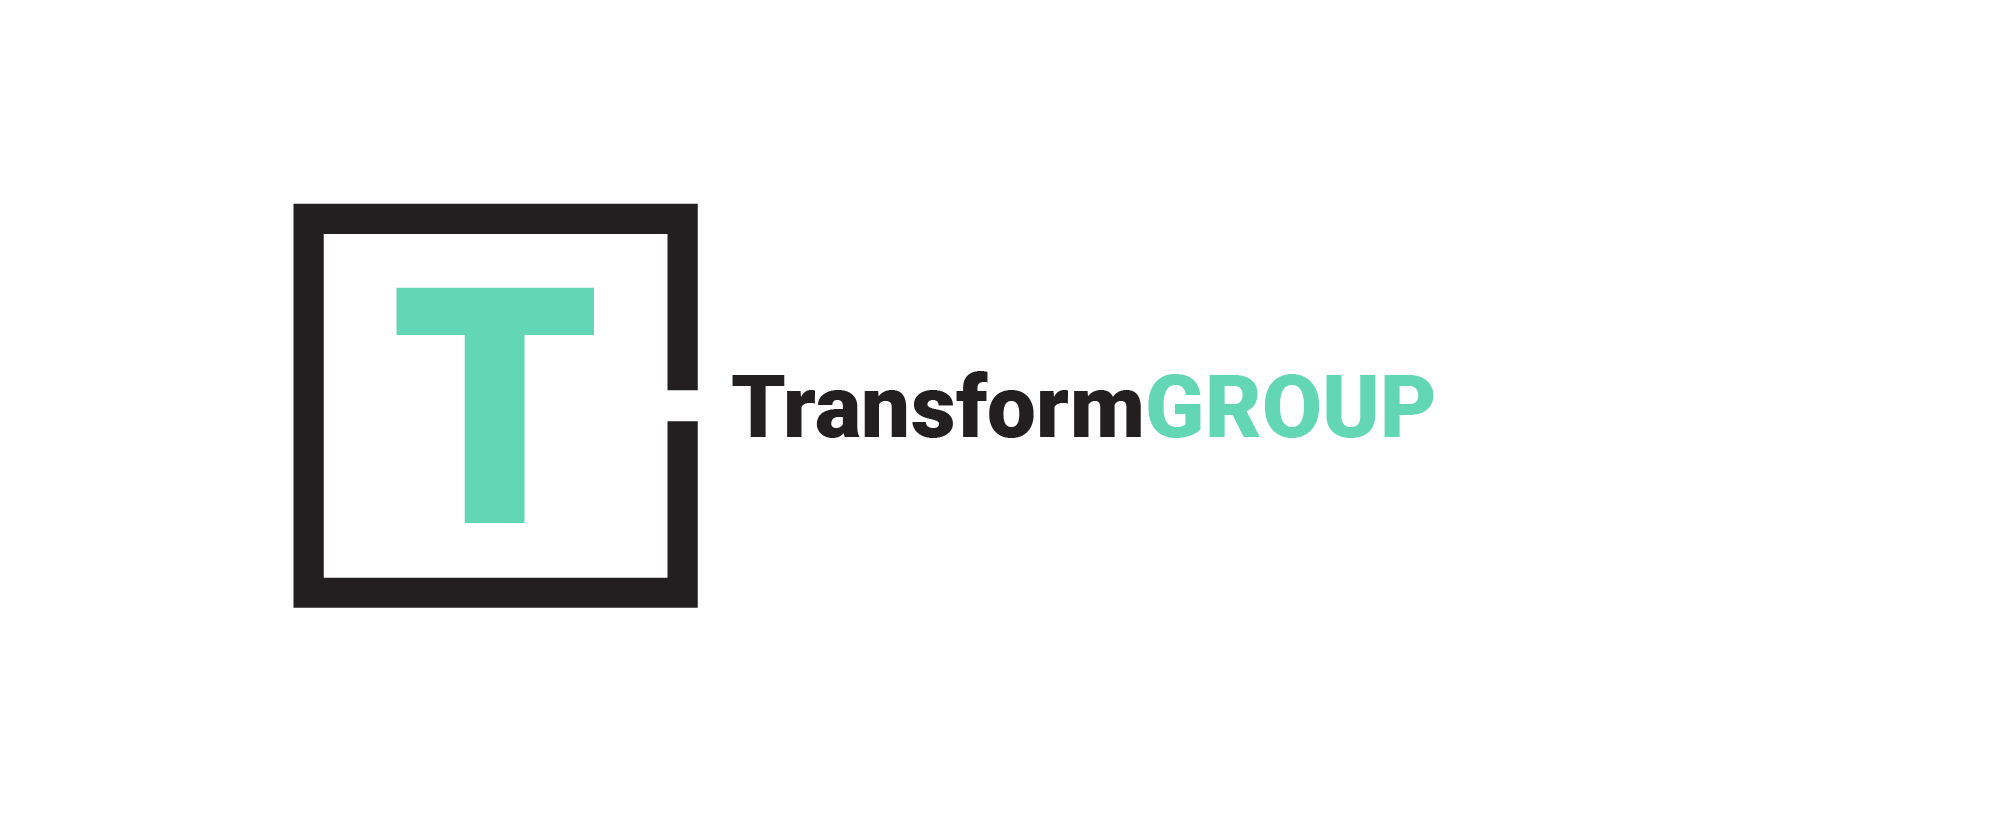 Transform Group logo for white_black overlay1